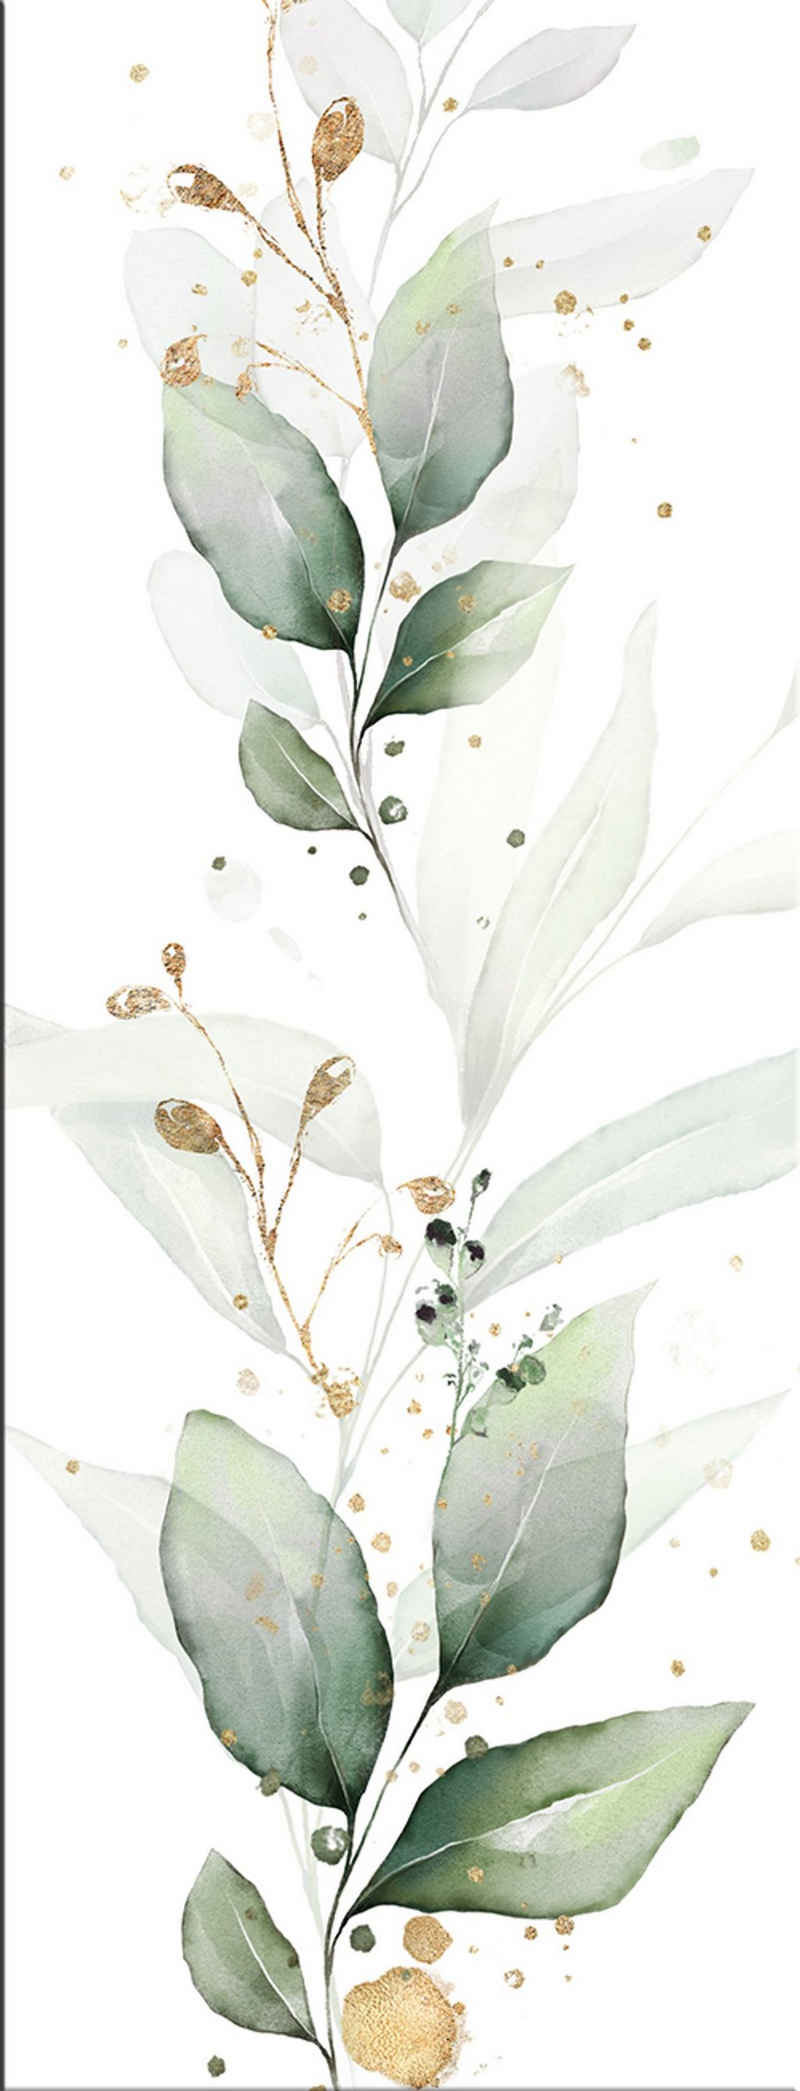 artissimo Glasbild Glasbild 30x80cm Bild aus Glas Aquarell-Malerei Zweige Mint-Grün Gold, Natur und Pflanzen : Eukalyptus II